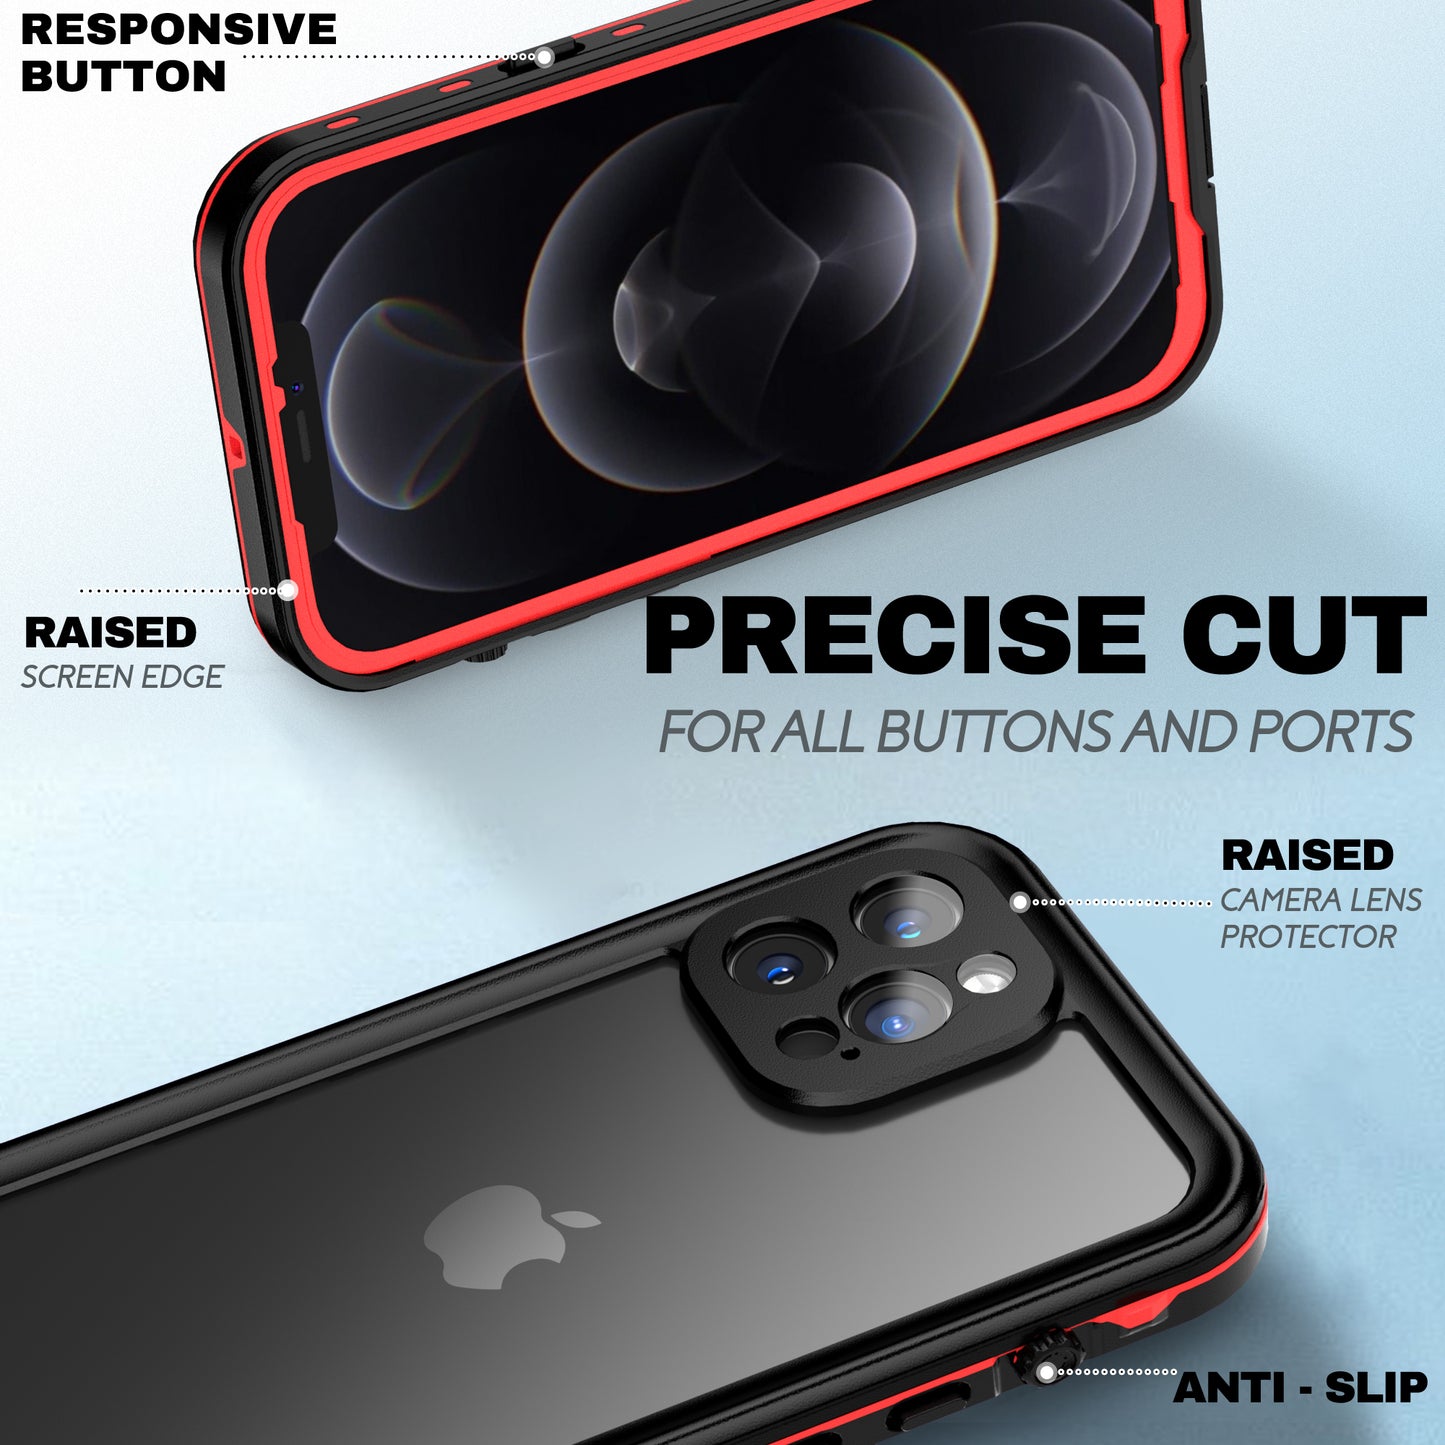 
                  
                    Apple iPhone 12 Series — TRE Series Waterproof Phone Case
                  
                